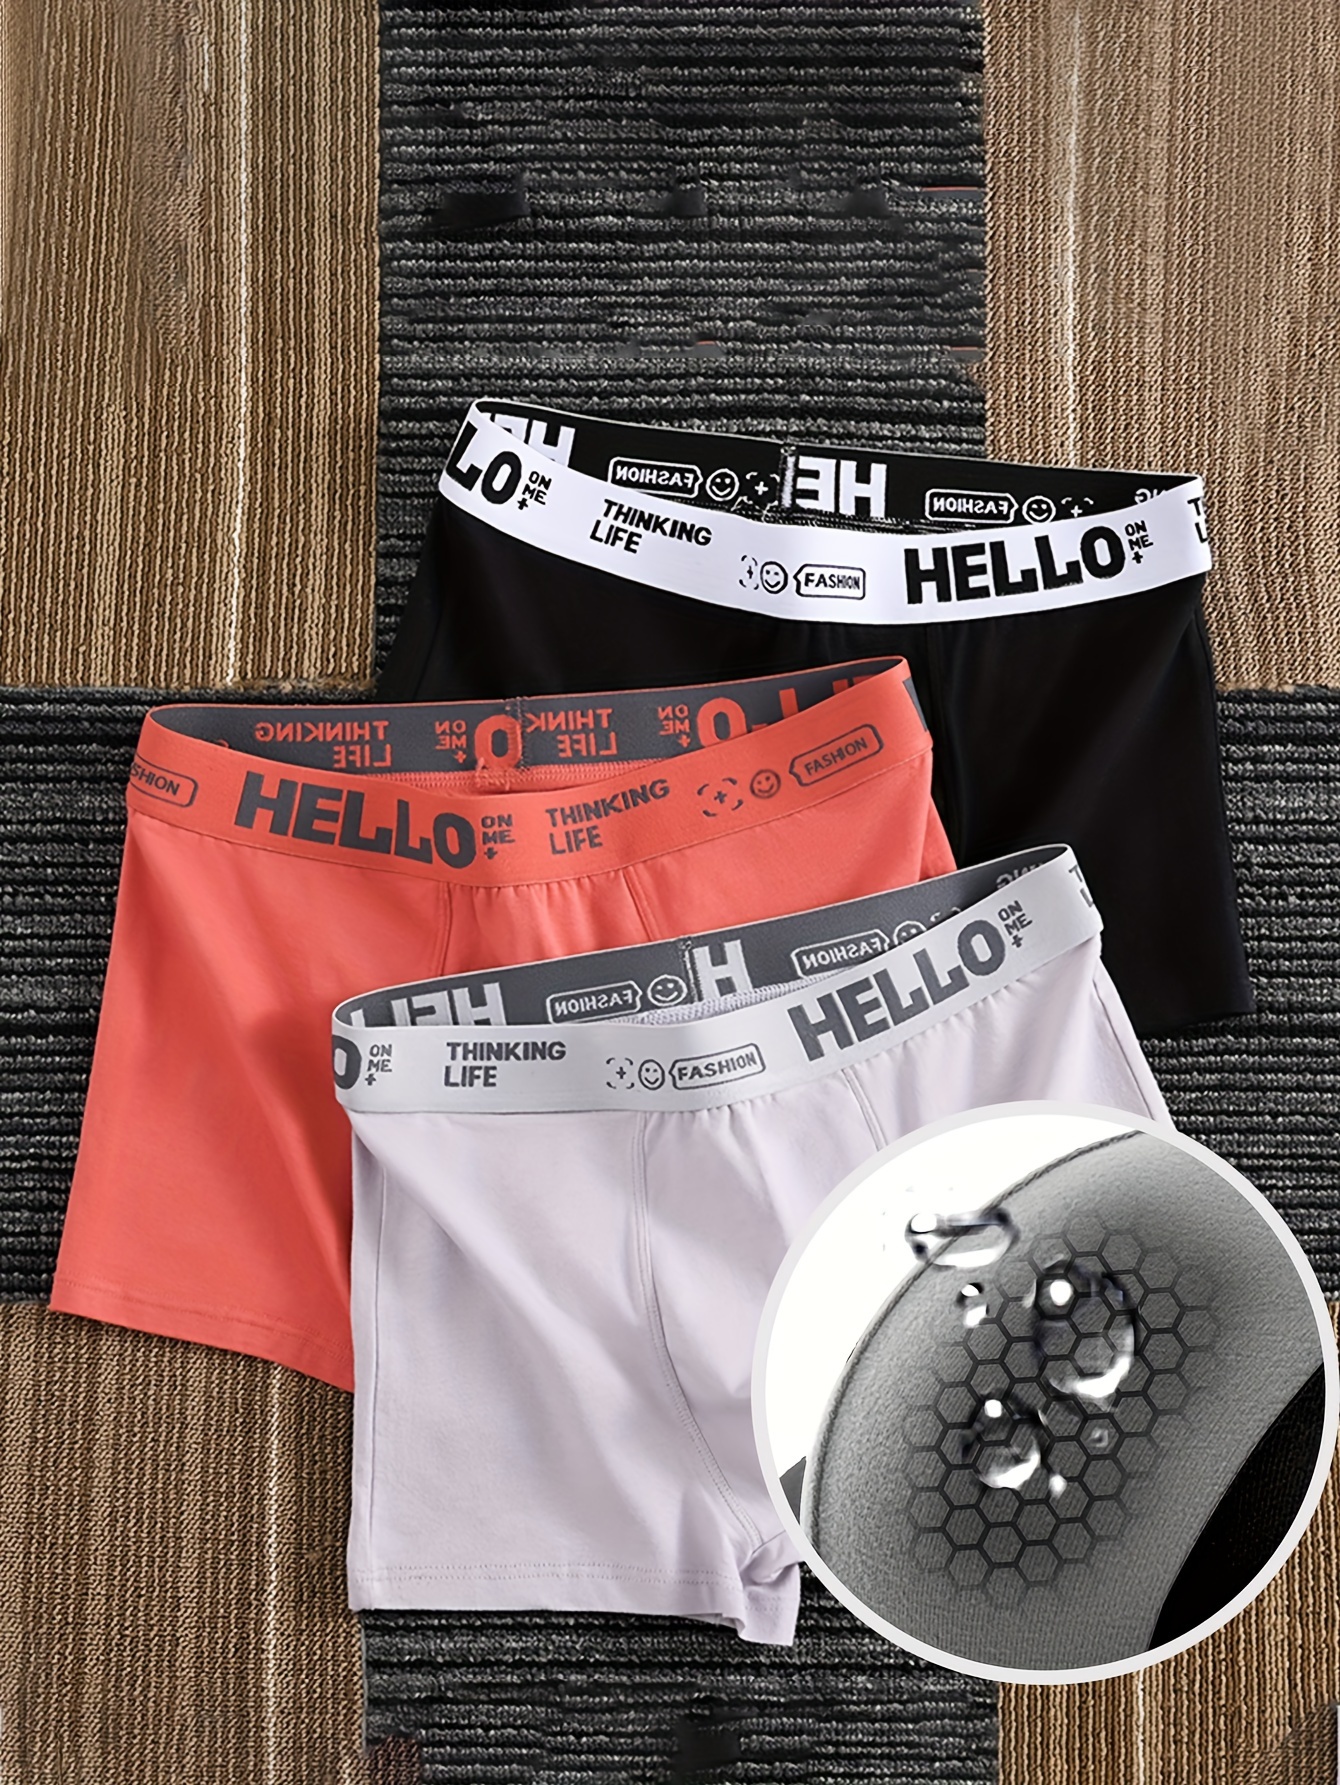 Men's Underwear Cotton Antibacterial Sweat absorbent - Temu